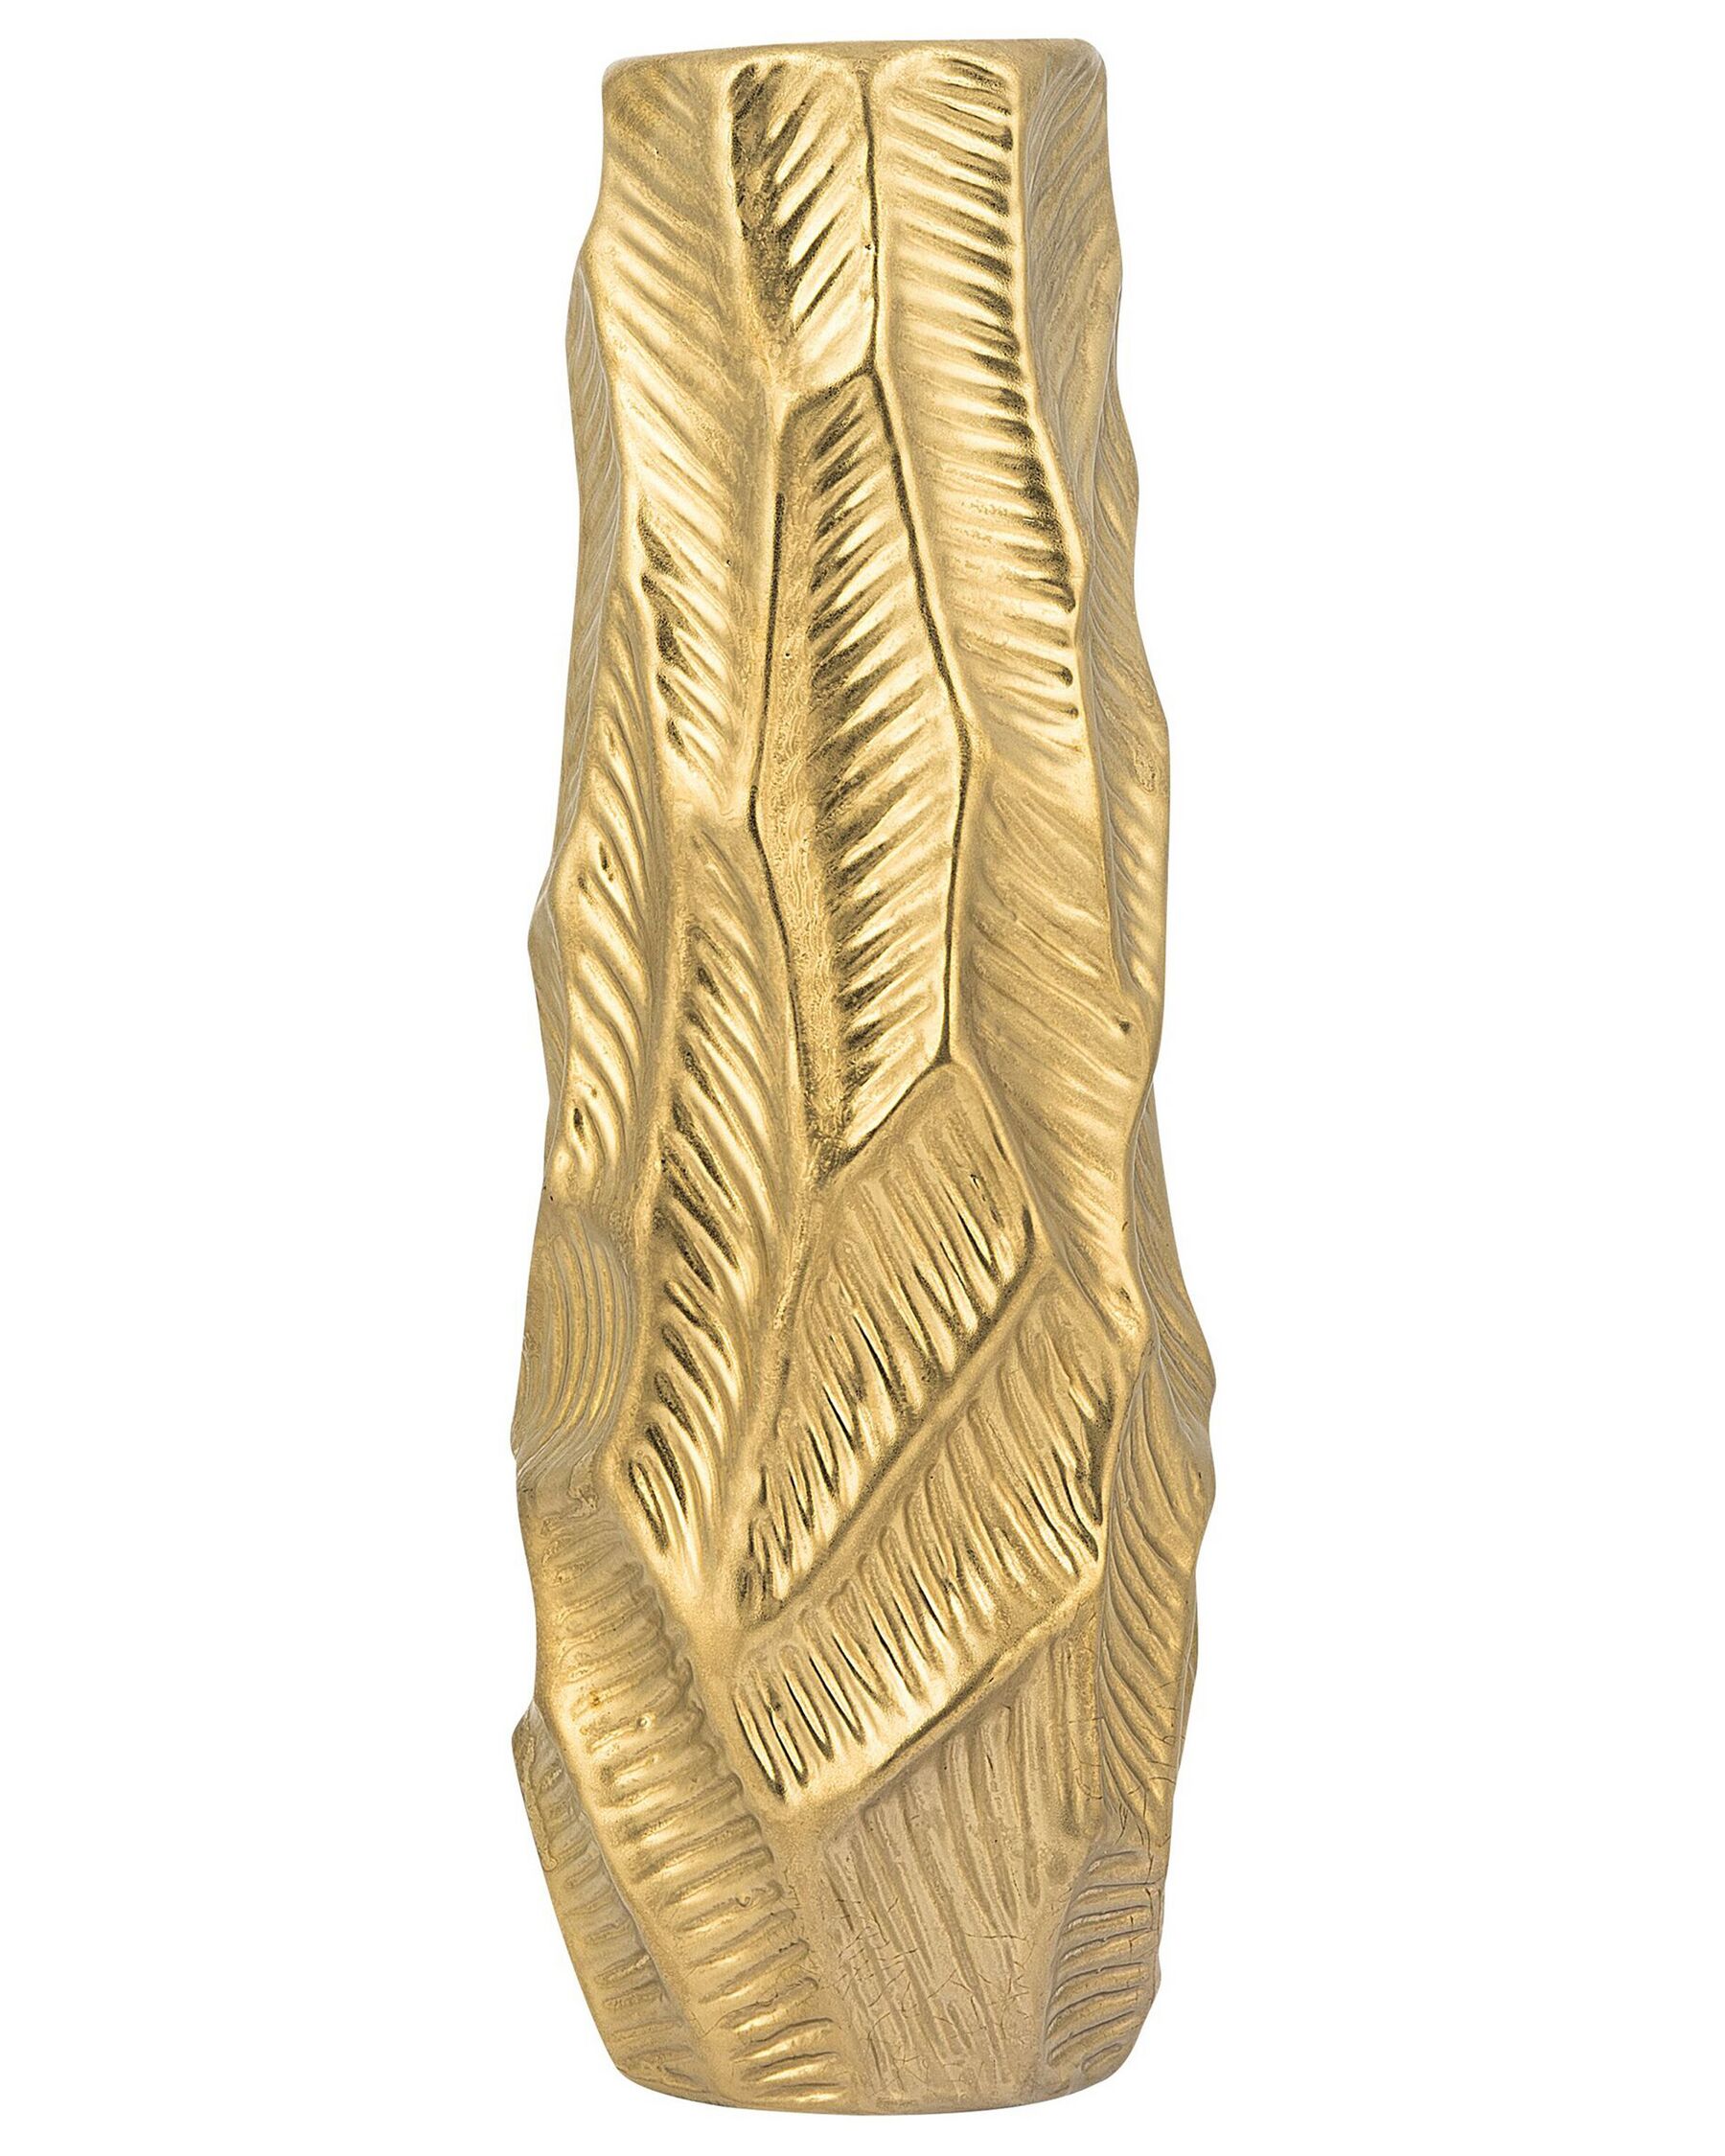 Vase décoratif doré 37 cm ZAFAR_734282